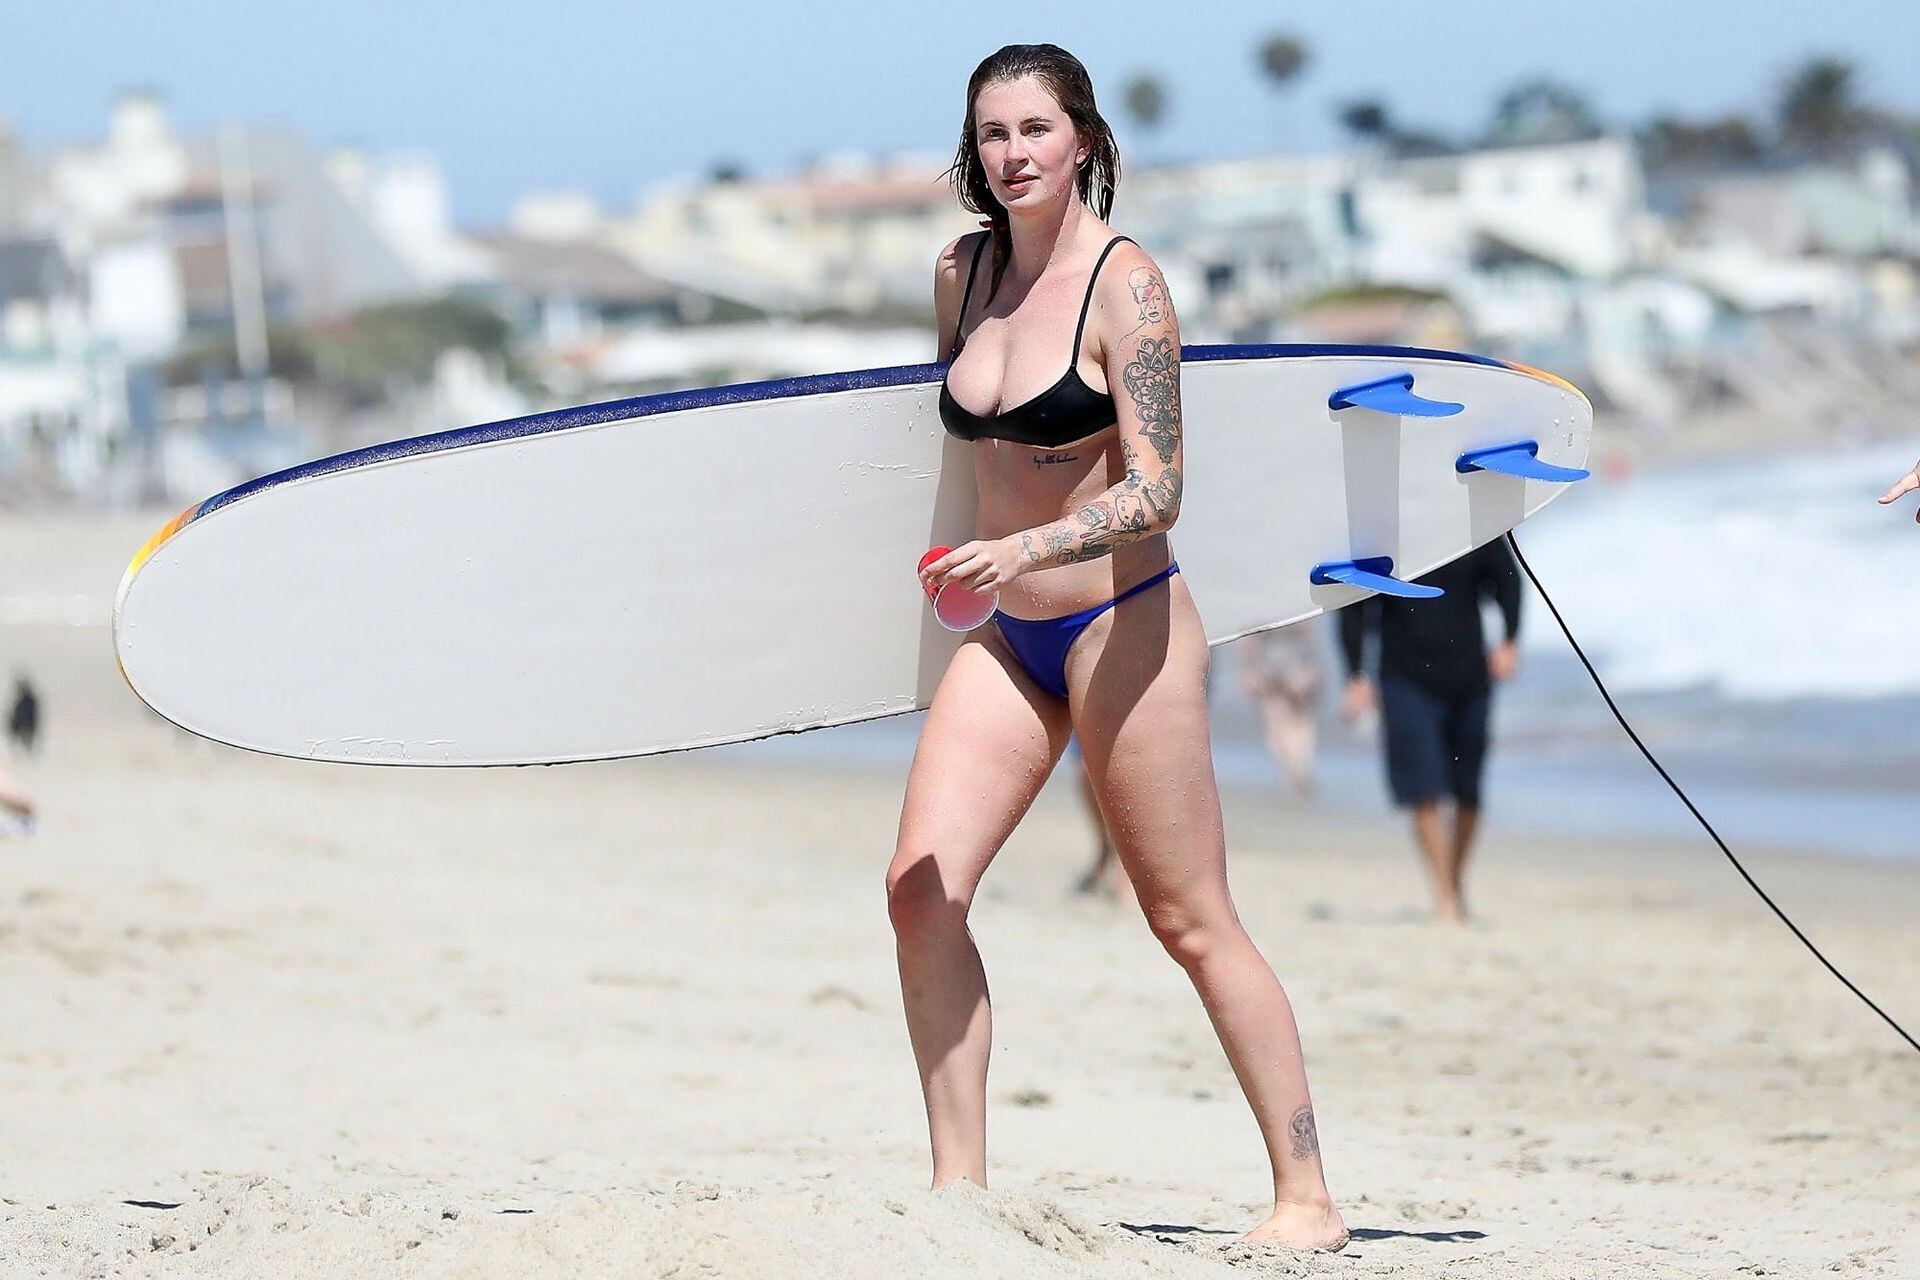 Ireland Baldwin, hija de Alec Baldwin y Kim Basinger, captada por los flashes en un día de surf en Los Ángeles